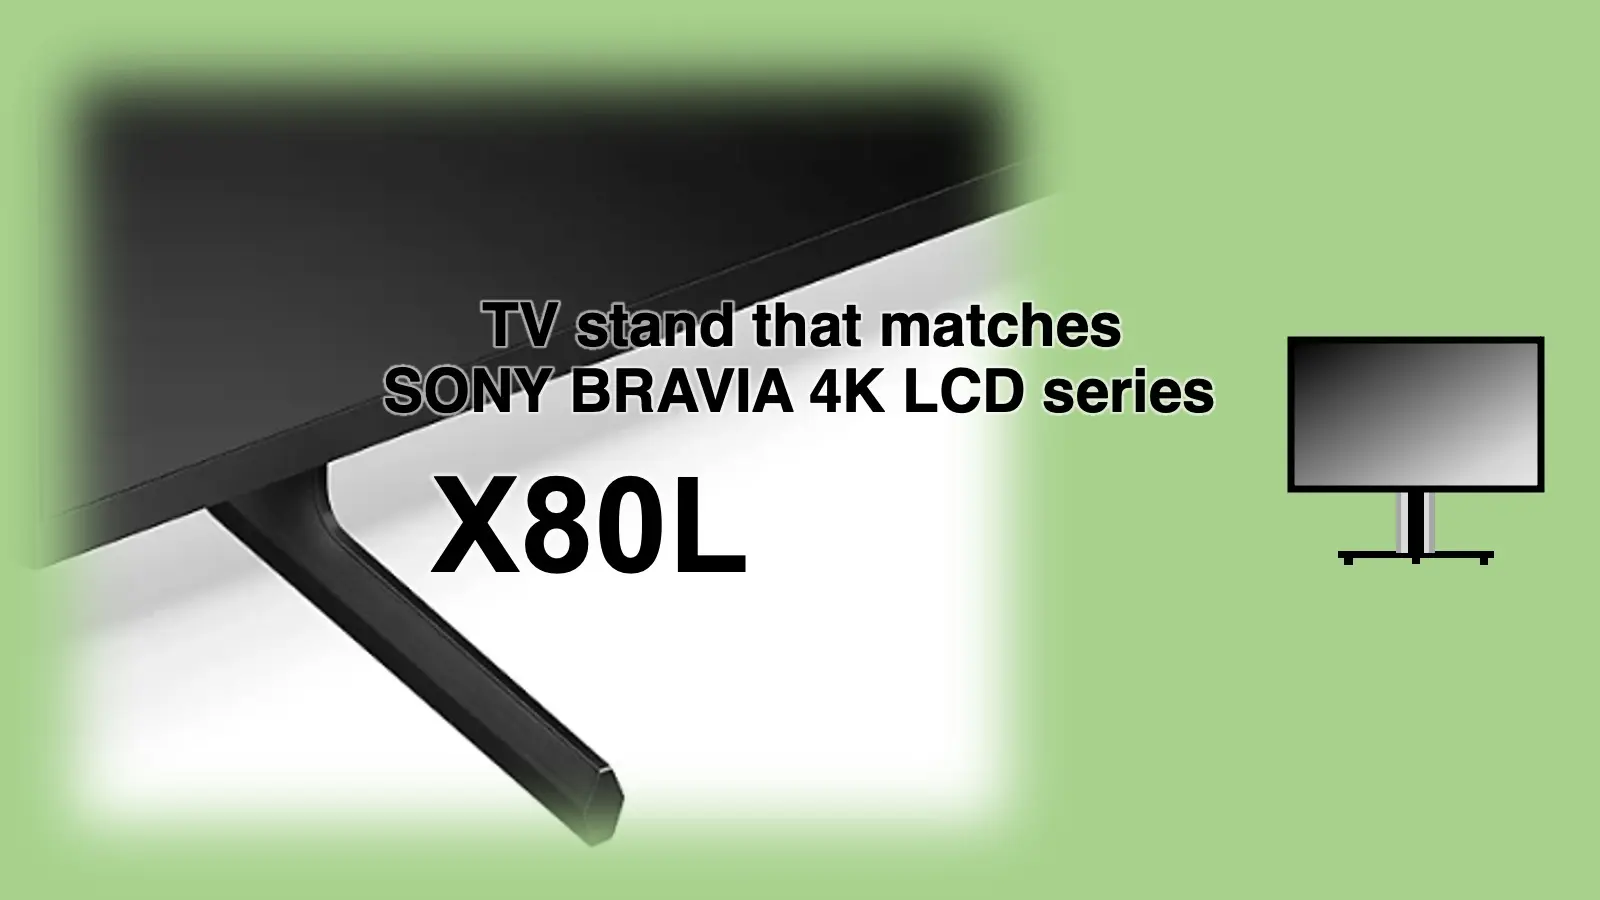 ソニー4K液晶ブラビア X80Lに最適なテレビスタンド紹介記事のアイキャッチャー